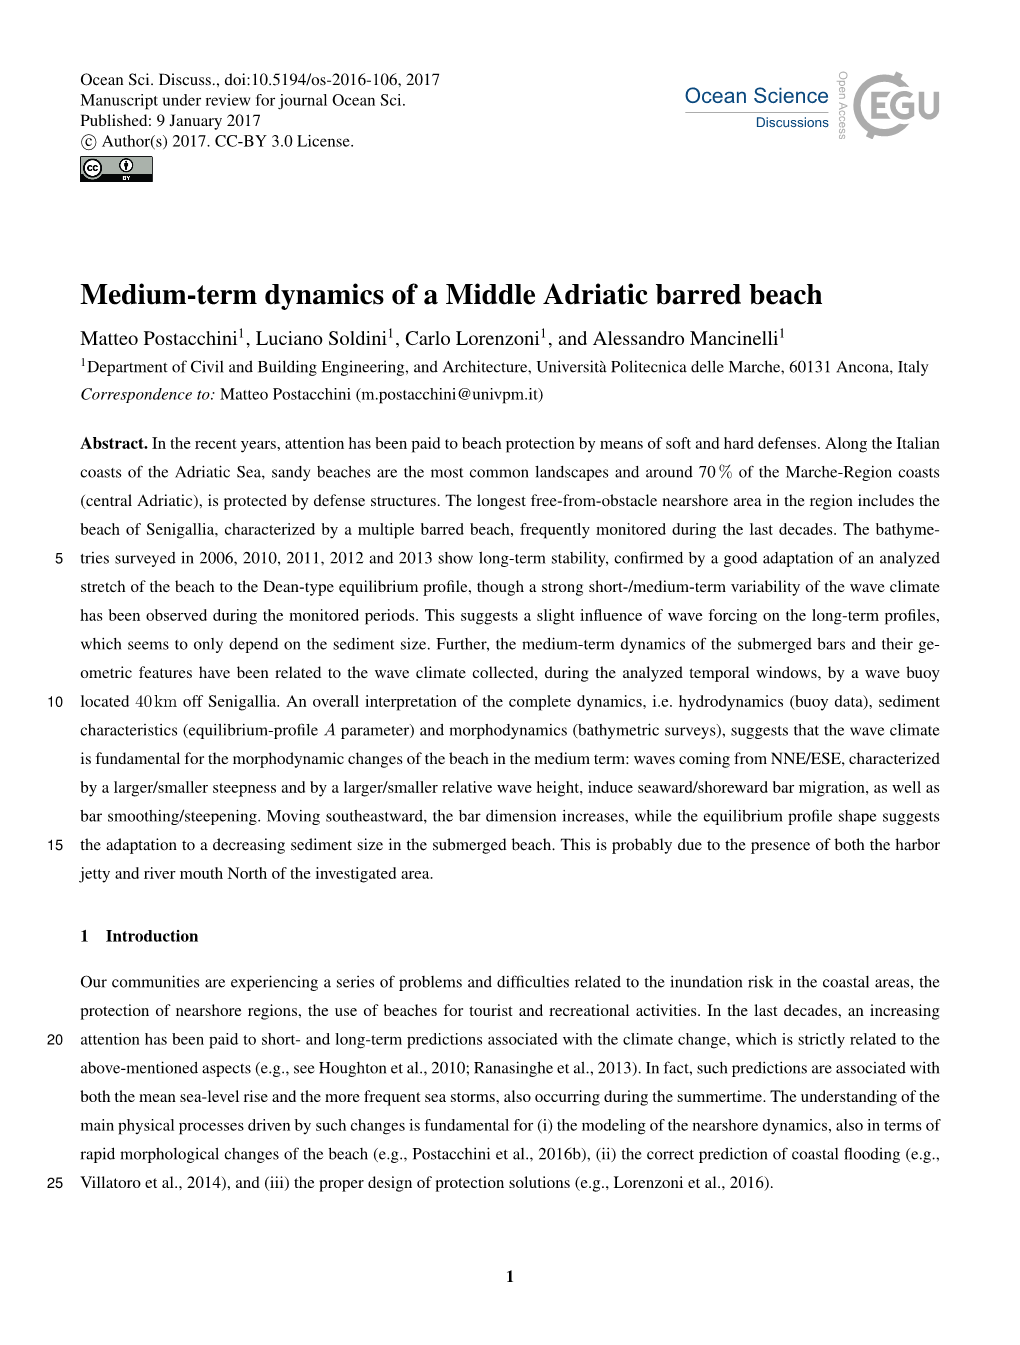 Medium-Term Dynamics of a Middle Adriatic Barred Beach